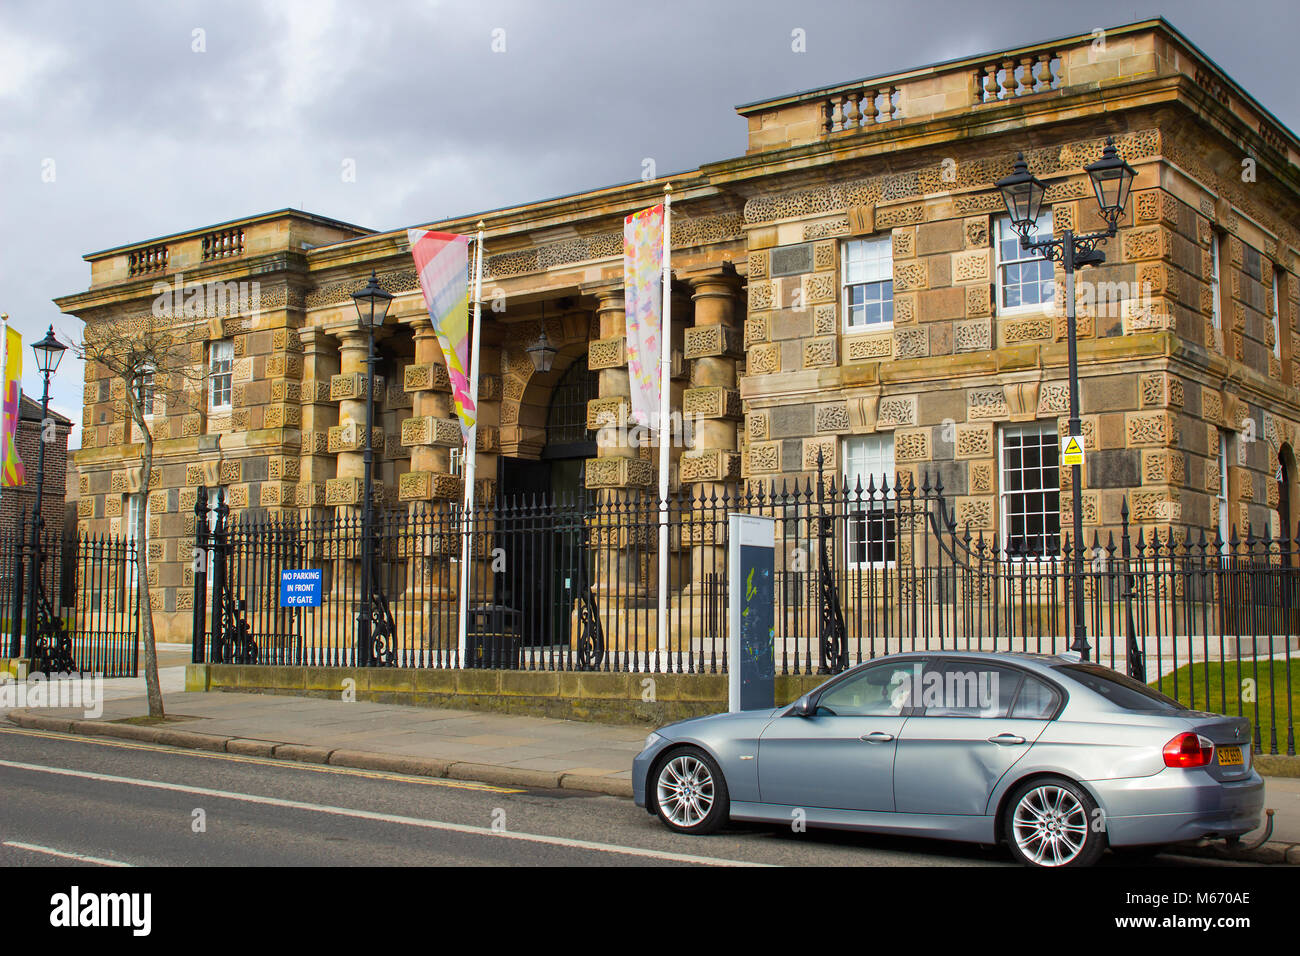 La vecchia prigione vittoriano sul Crumlin Road a Belfast Irlanda del Nord ora una popolare attrazione turistica e centro di accoglienza, Foto Stock